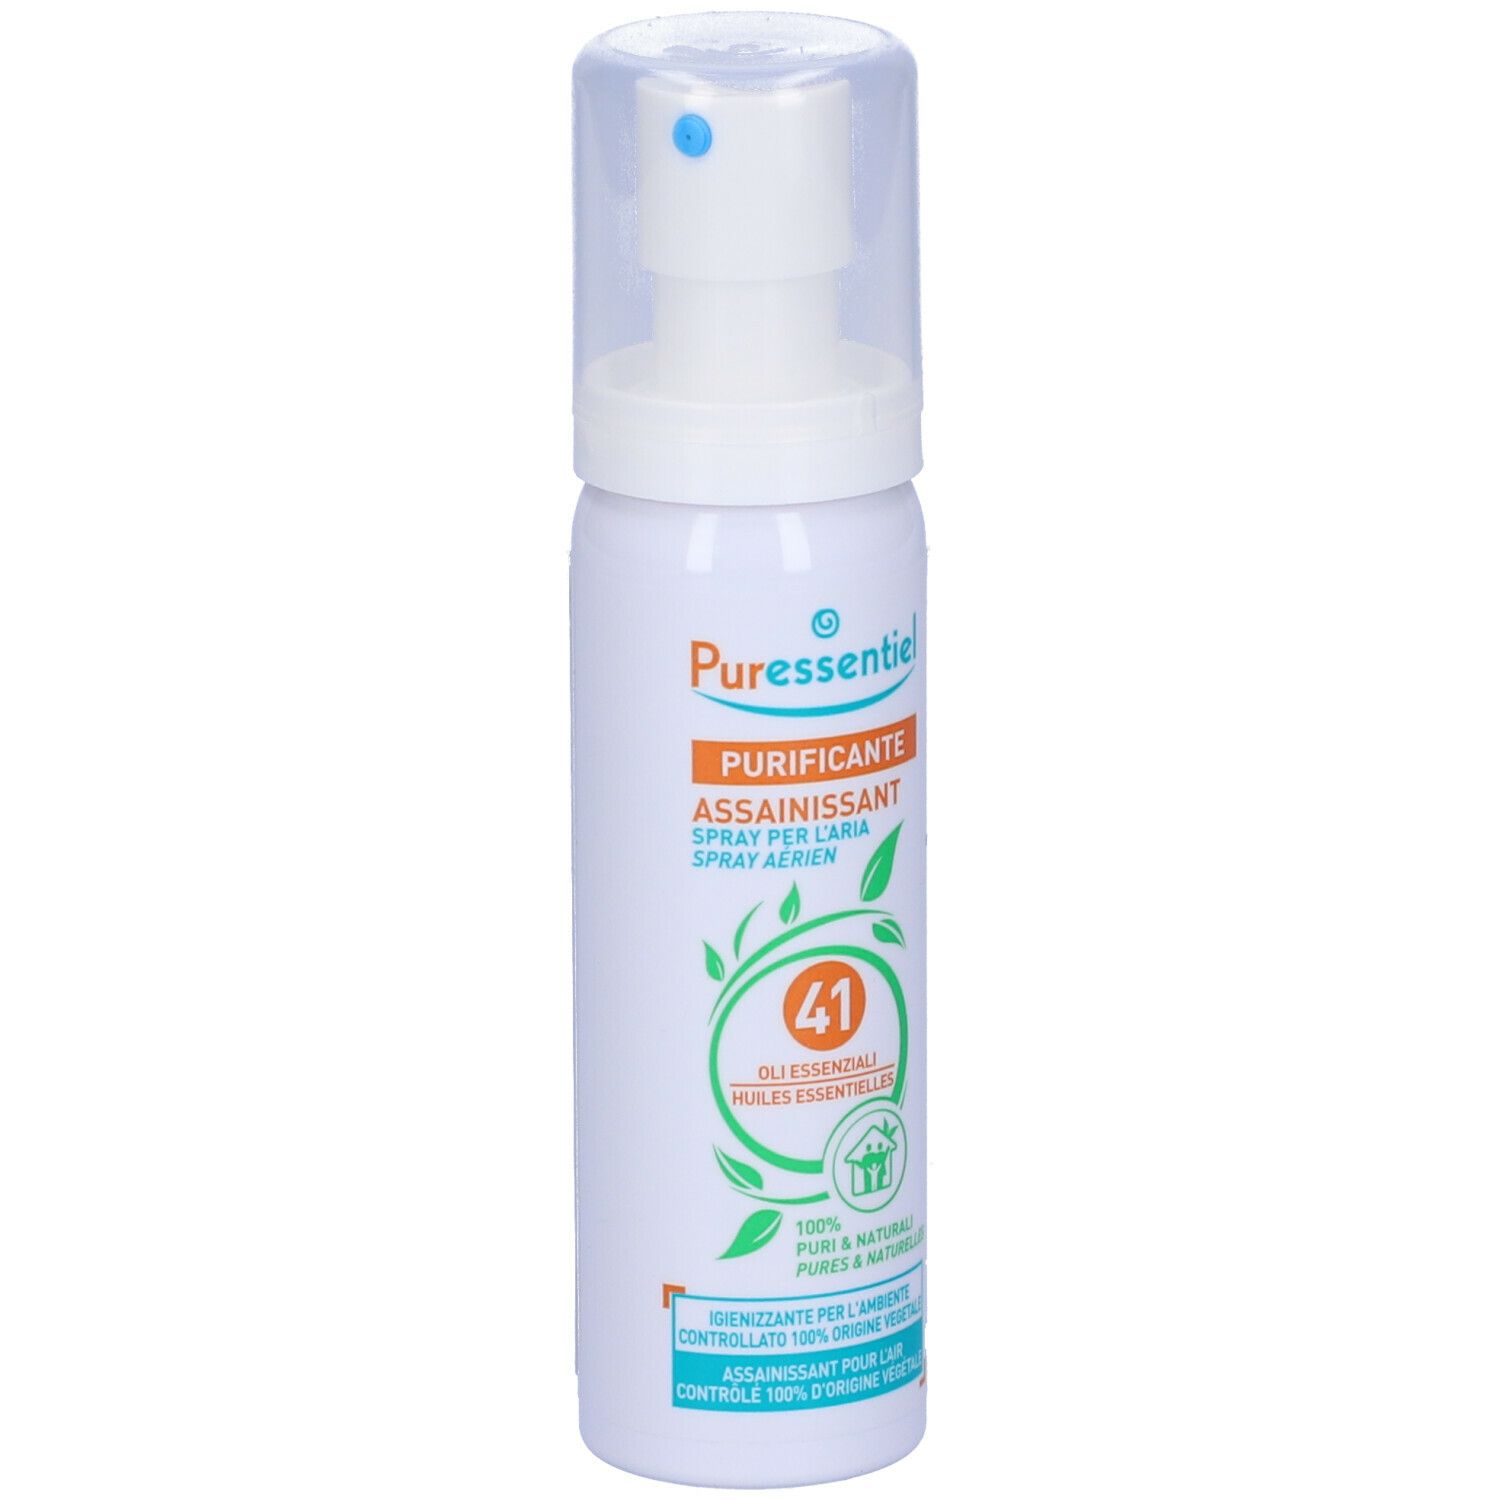 Puressentiel Purificante Spray per l'Aria con Oli Essenziali 75 ml